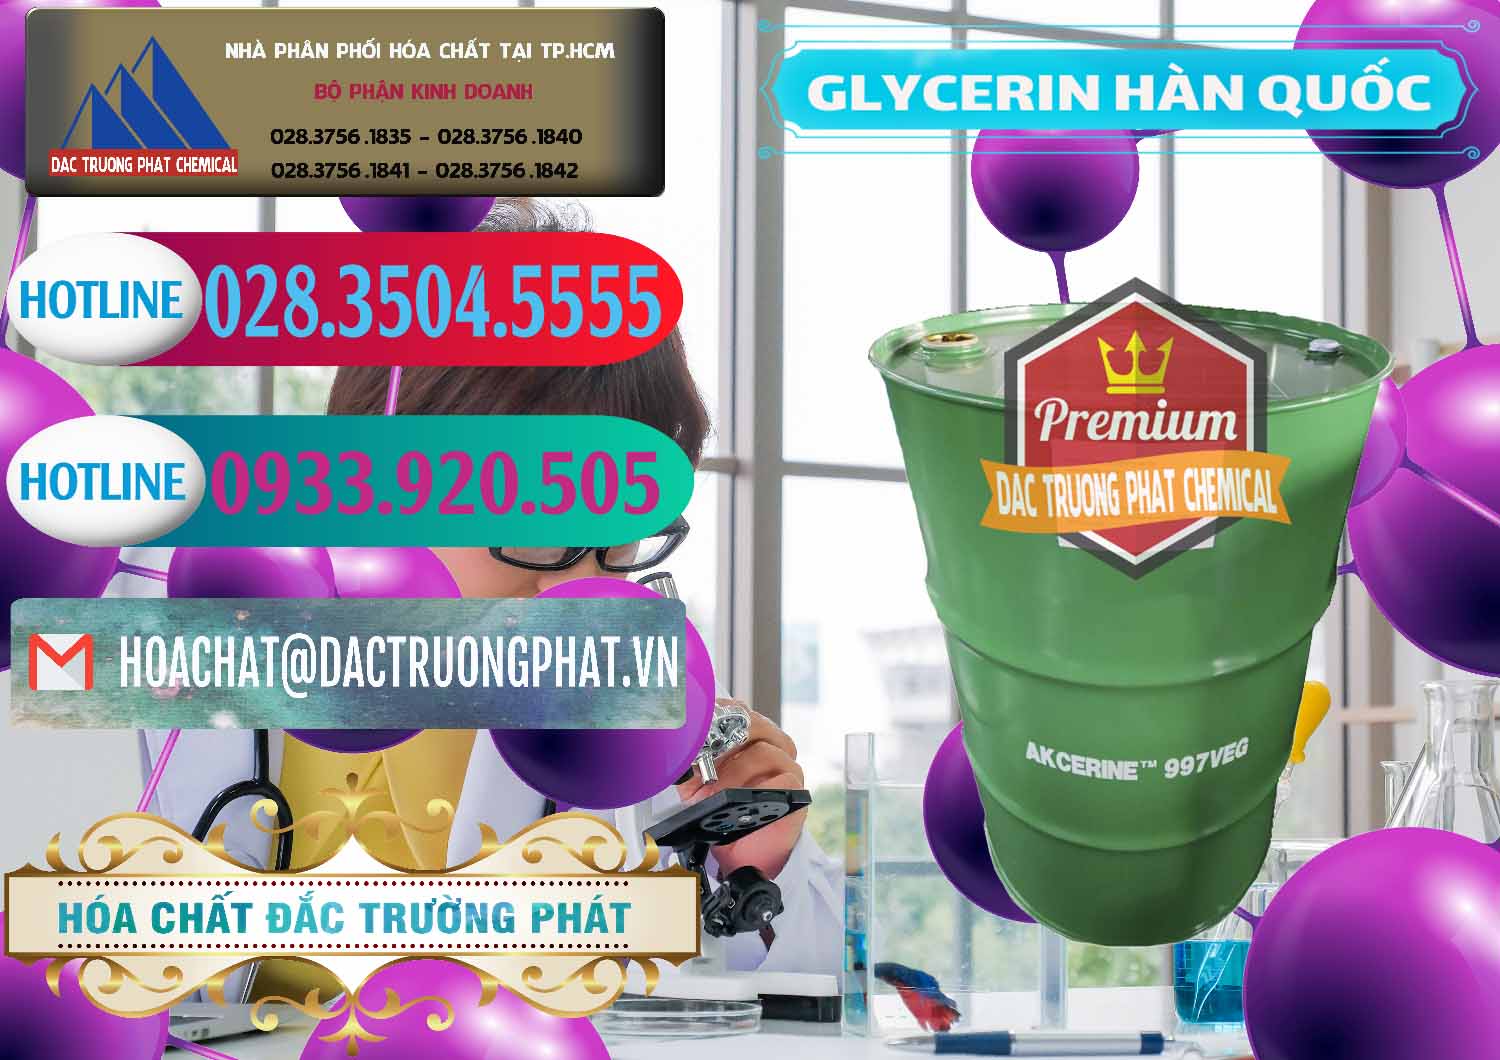 Cty bán ( cung ứng ) Glycerin – C3H8O3 Hàn Quốc Korea - 0403 - Đơn vị kinh doanh - cung cấp hóa chất tại TP.HCM - truongphat.vn